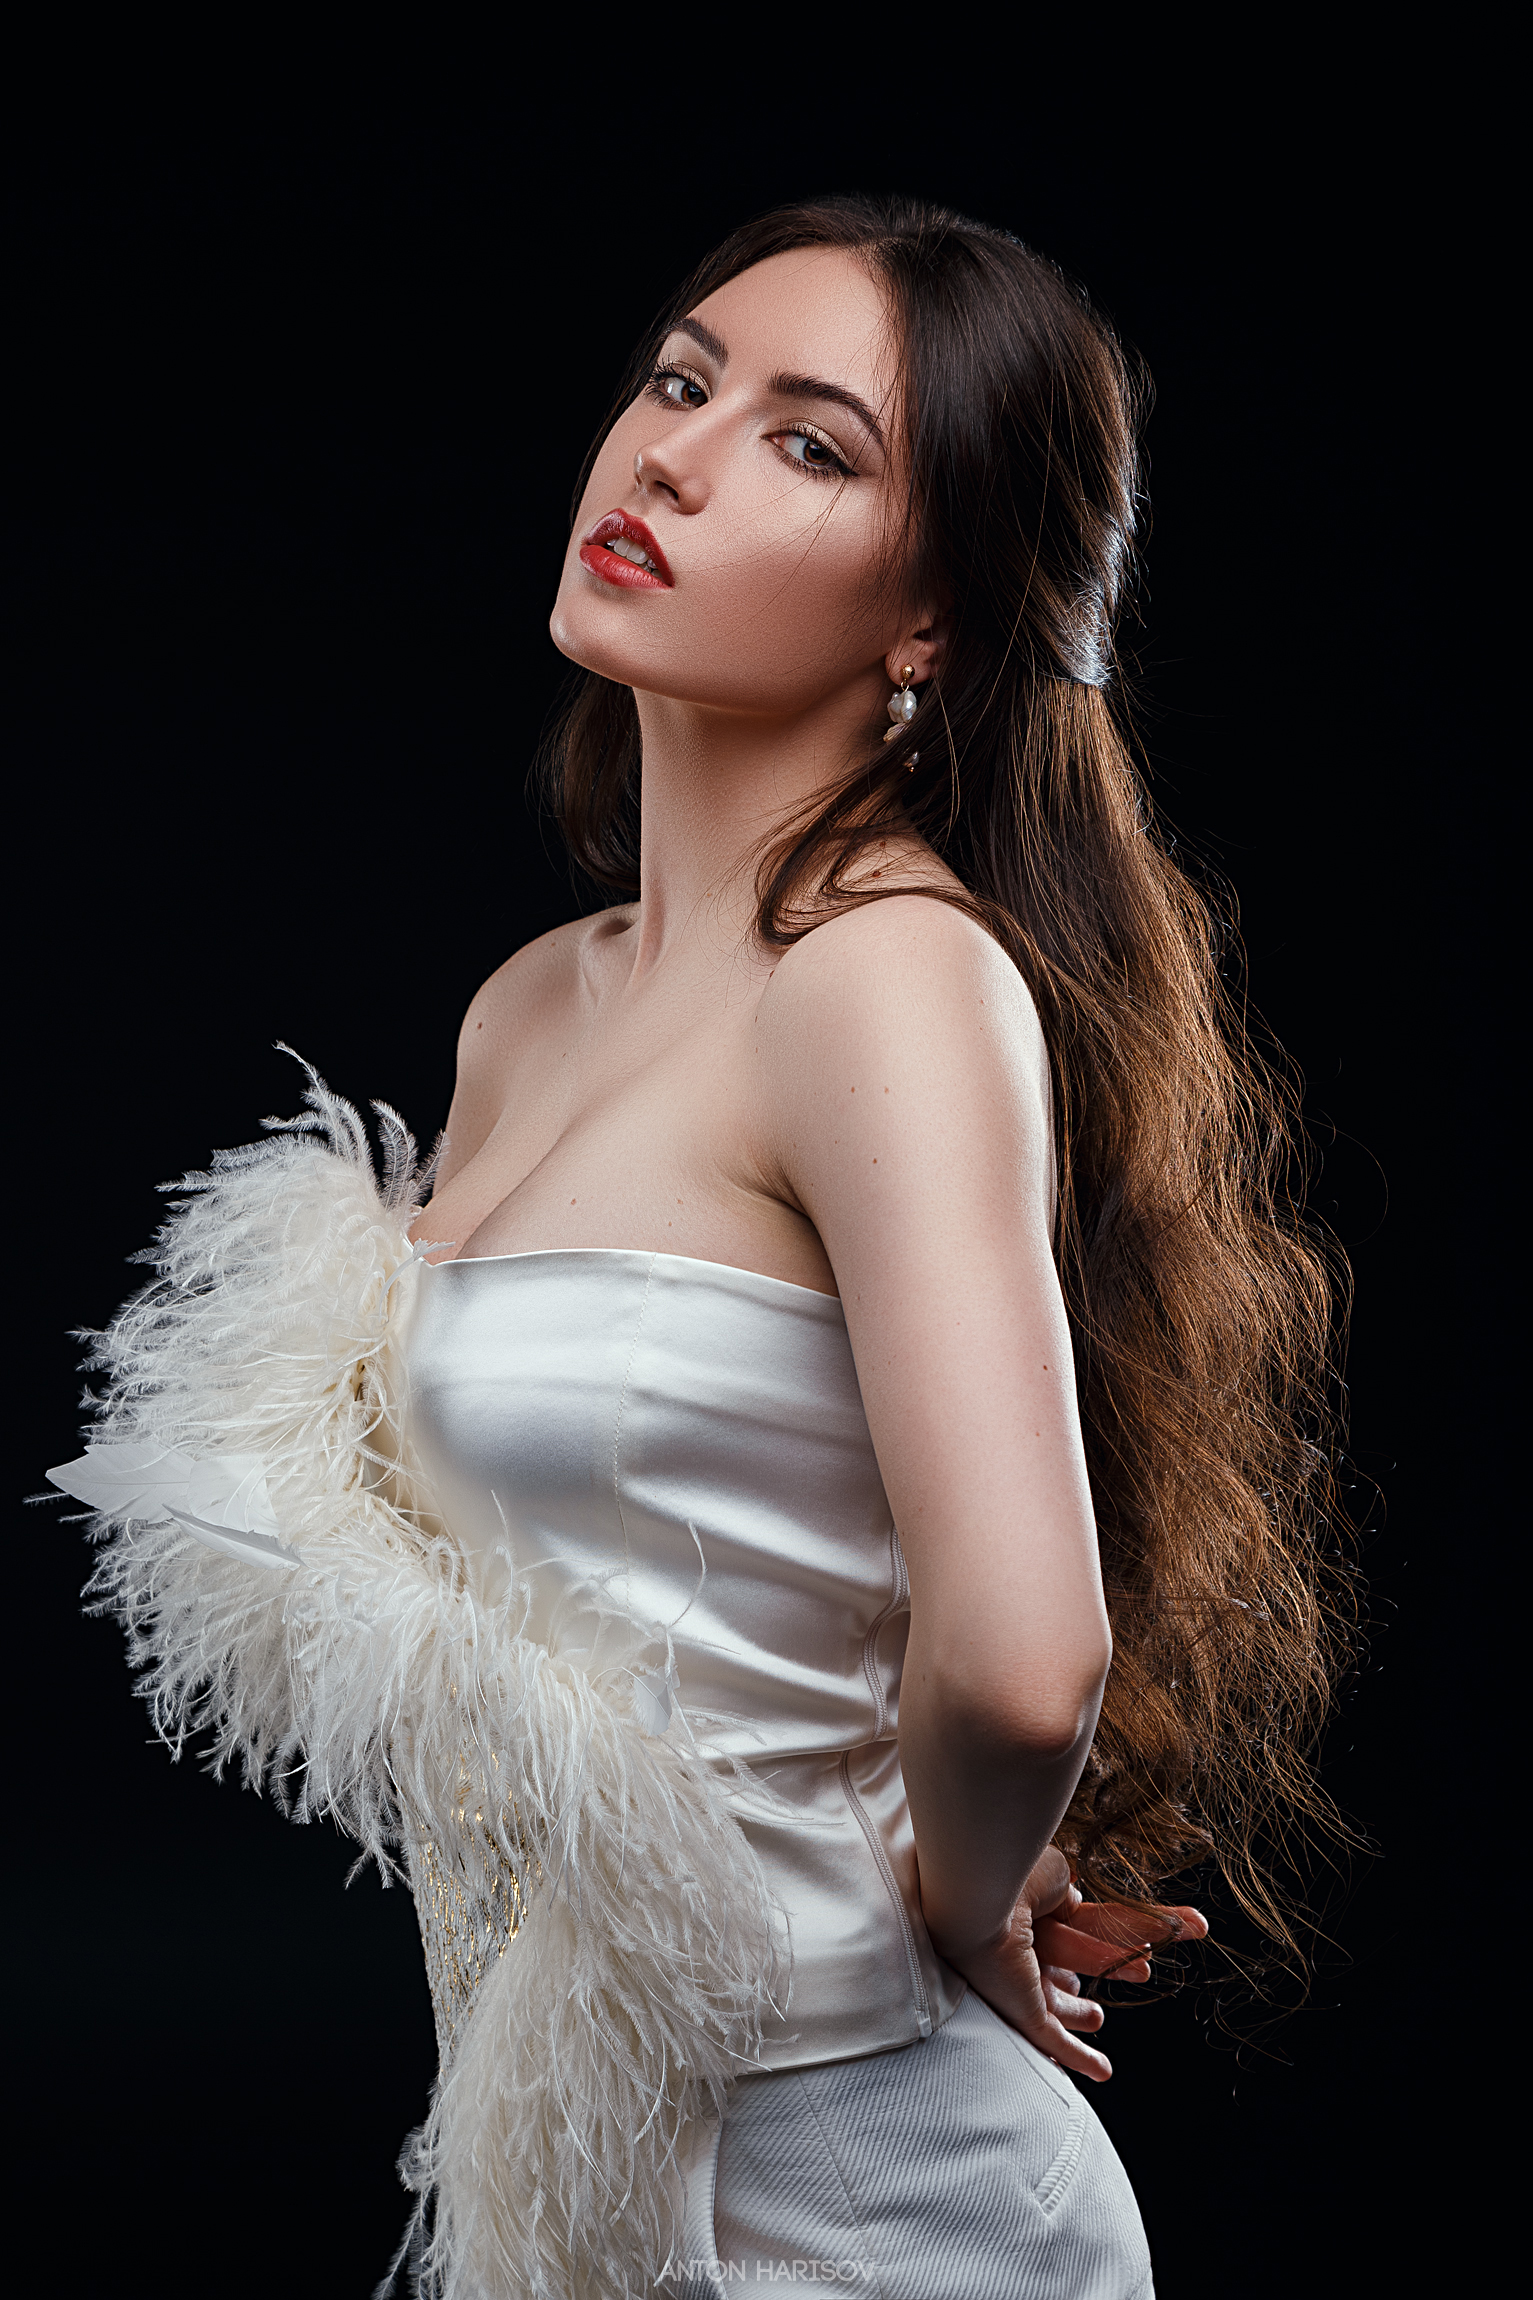 Anton Harisov Women Brunette Long Hair Dress White Clothing Bare Shoulders Lipstick Black Background 1533x2300